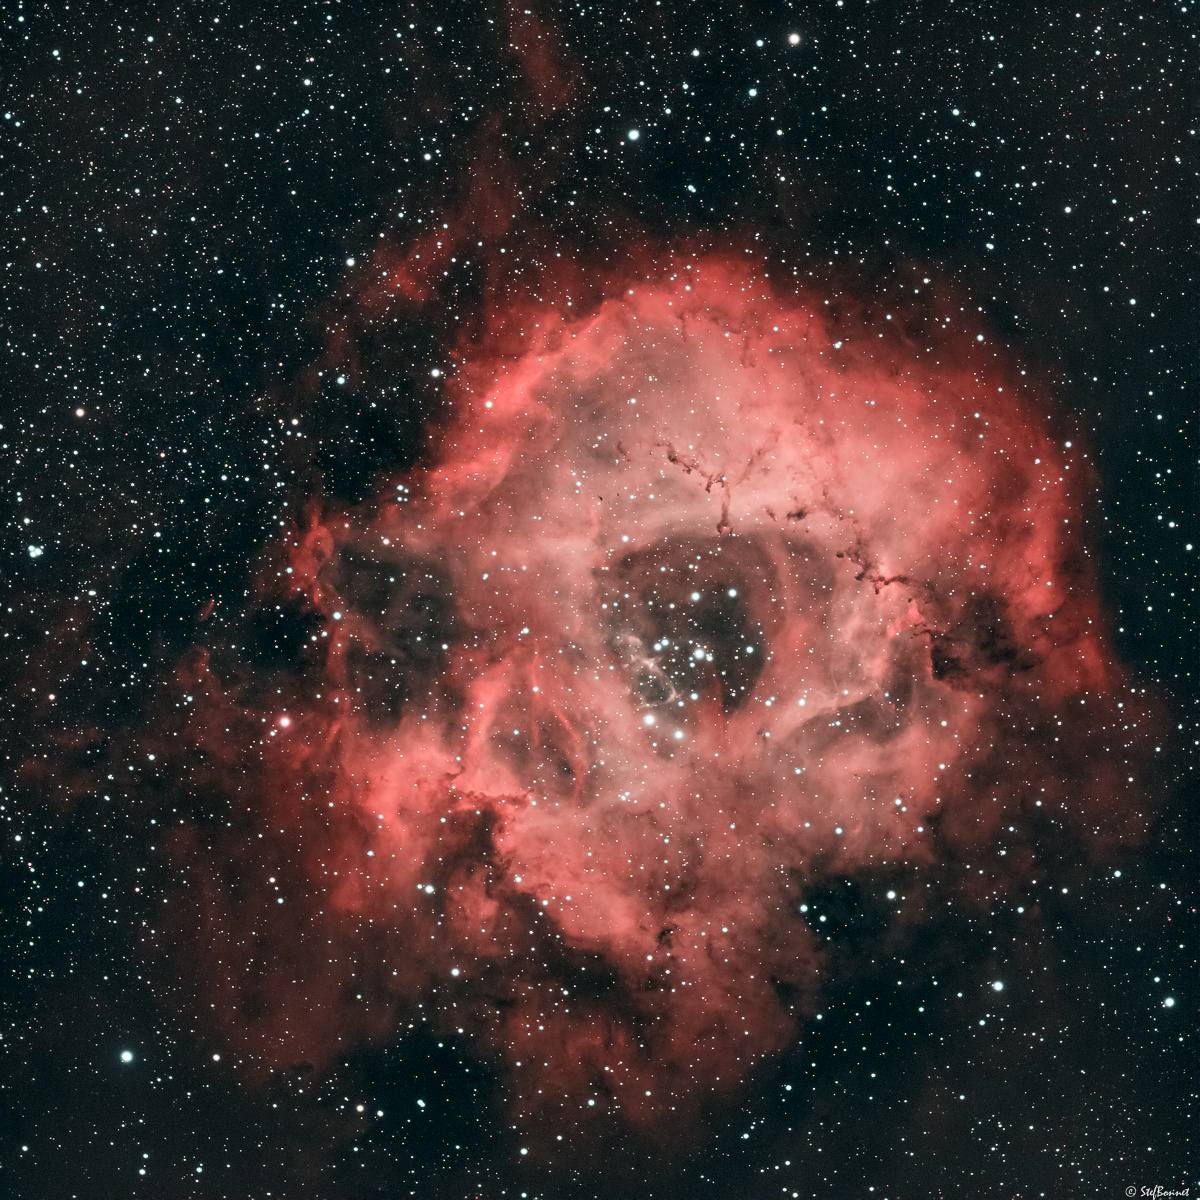 61f3ecbf84bf5_NGC22392244Rosette-Red-Web.jpg.668aa8925f43e34b97b4f2413edcfb3d.jpg